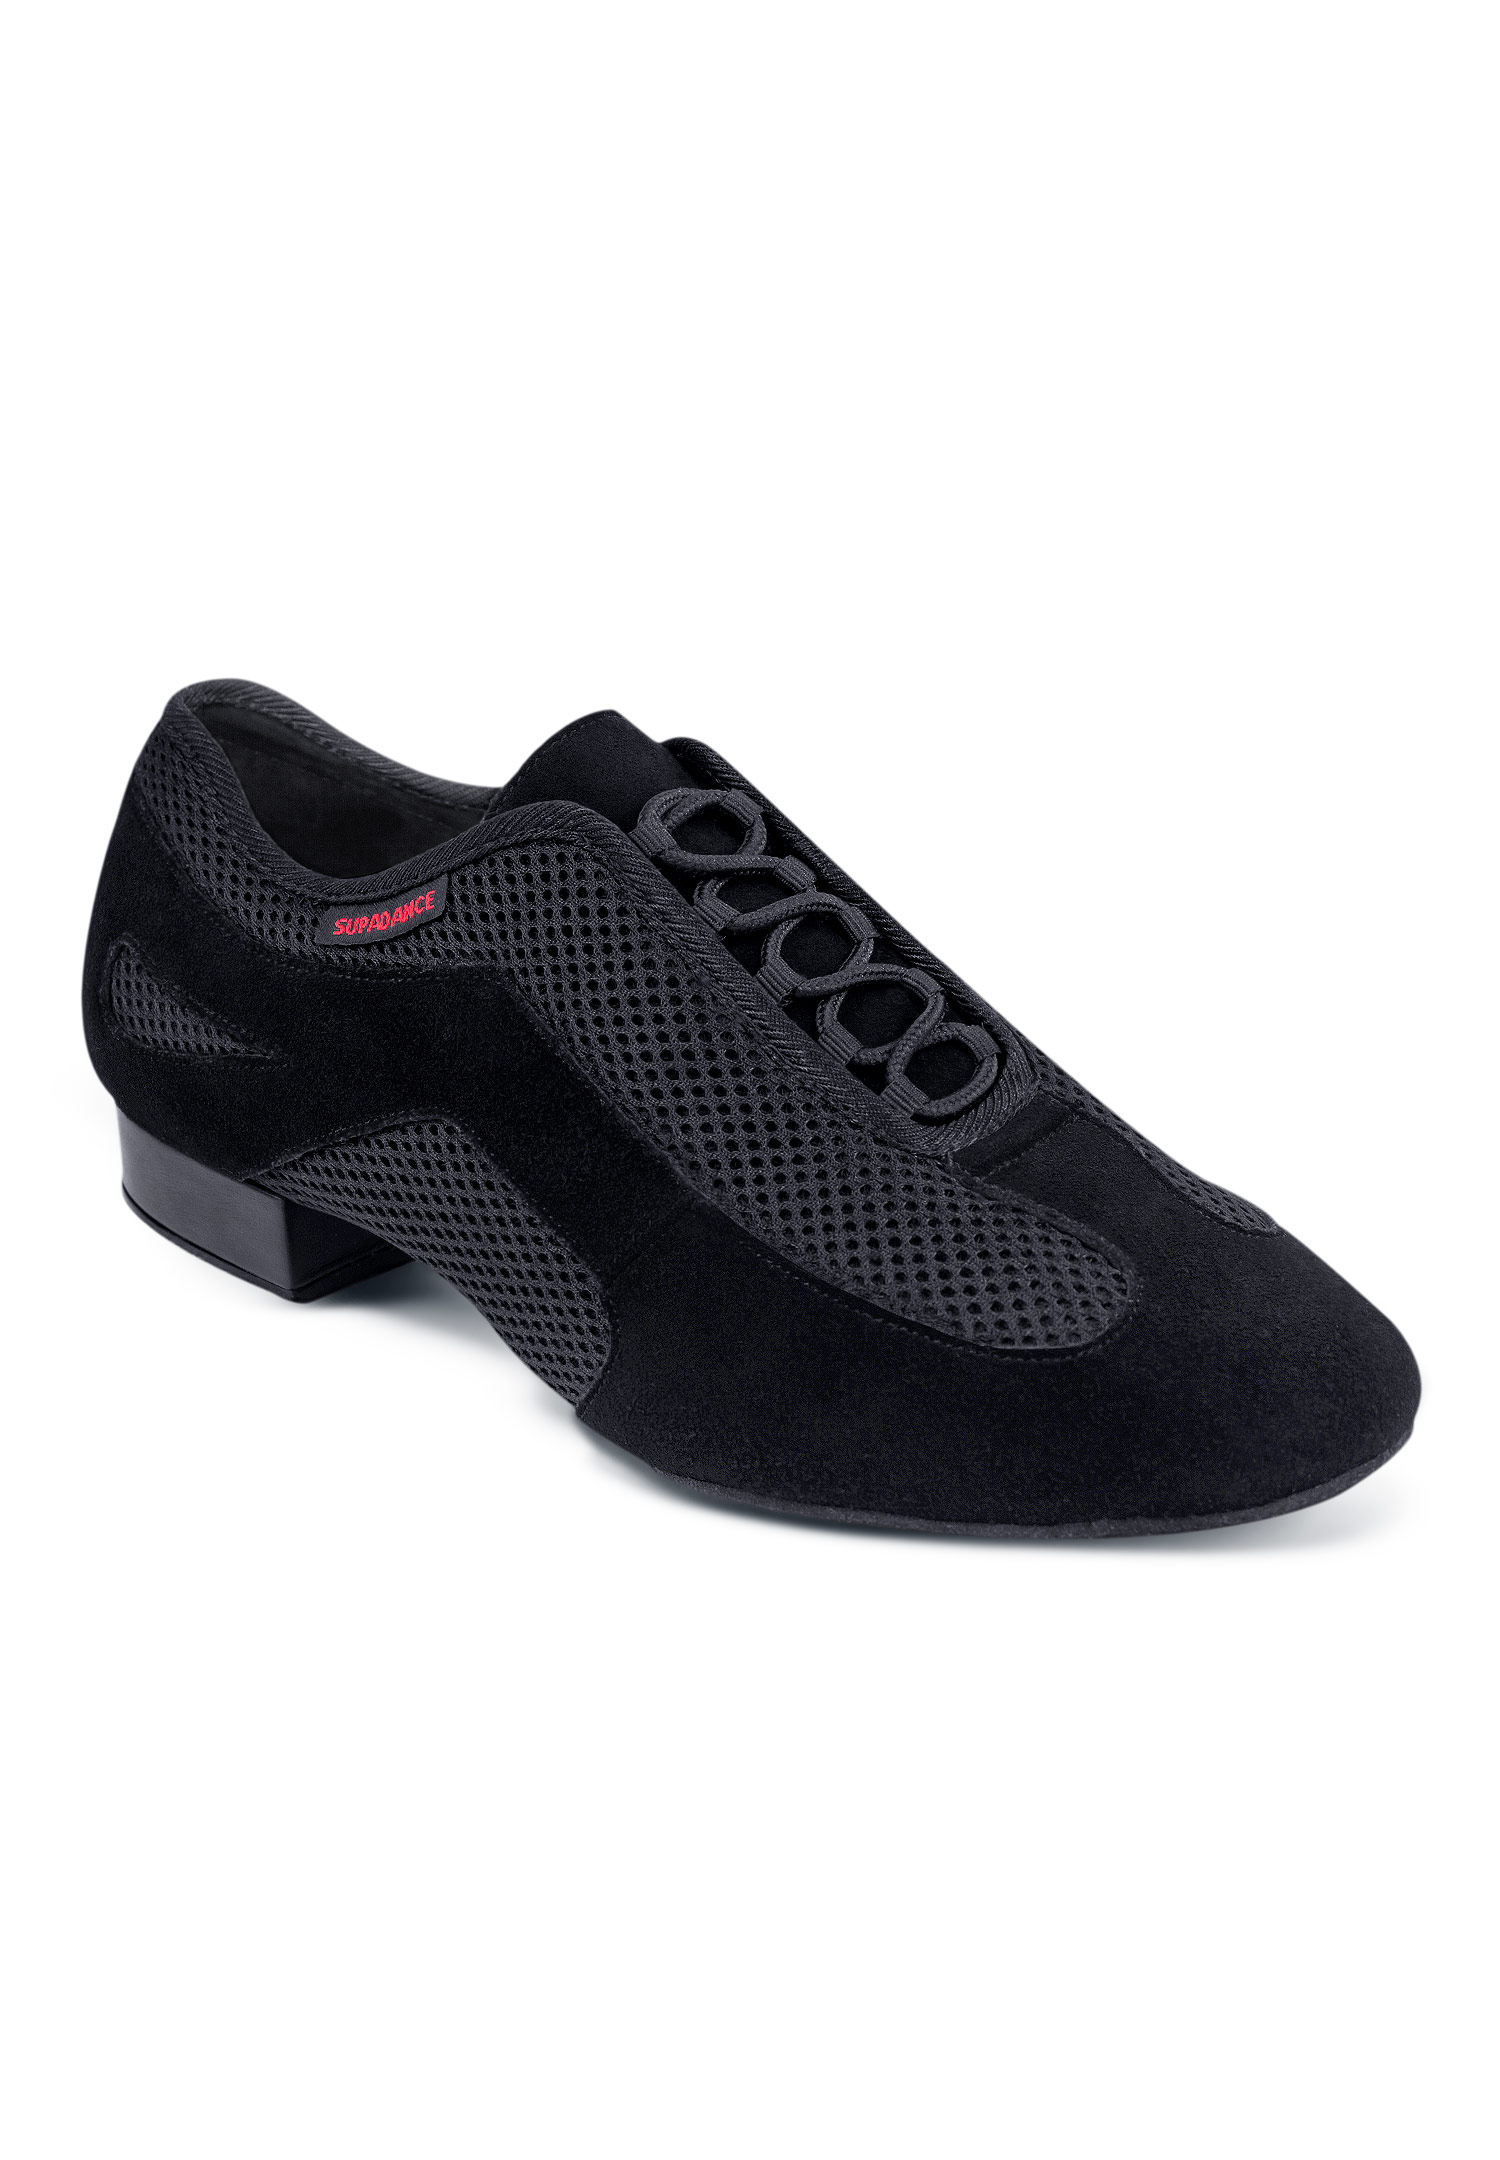 Supadance Shoes & Sportswear | Mens Ballroom/Latin Dance Fashion